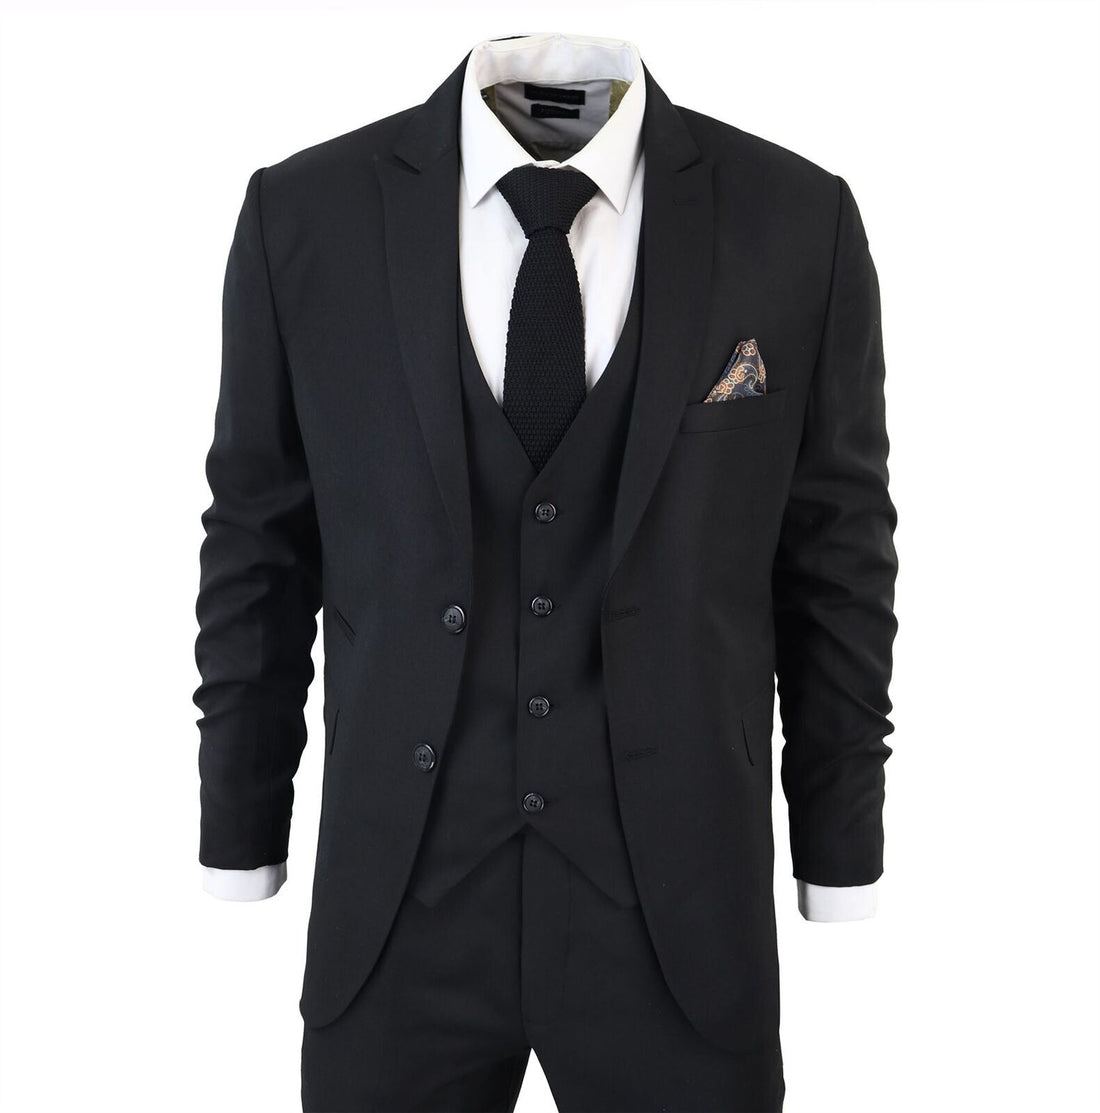 Mens IM1 Classic Plain Black 3 Piece Suit - Upperclass Fashions 